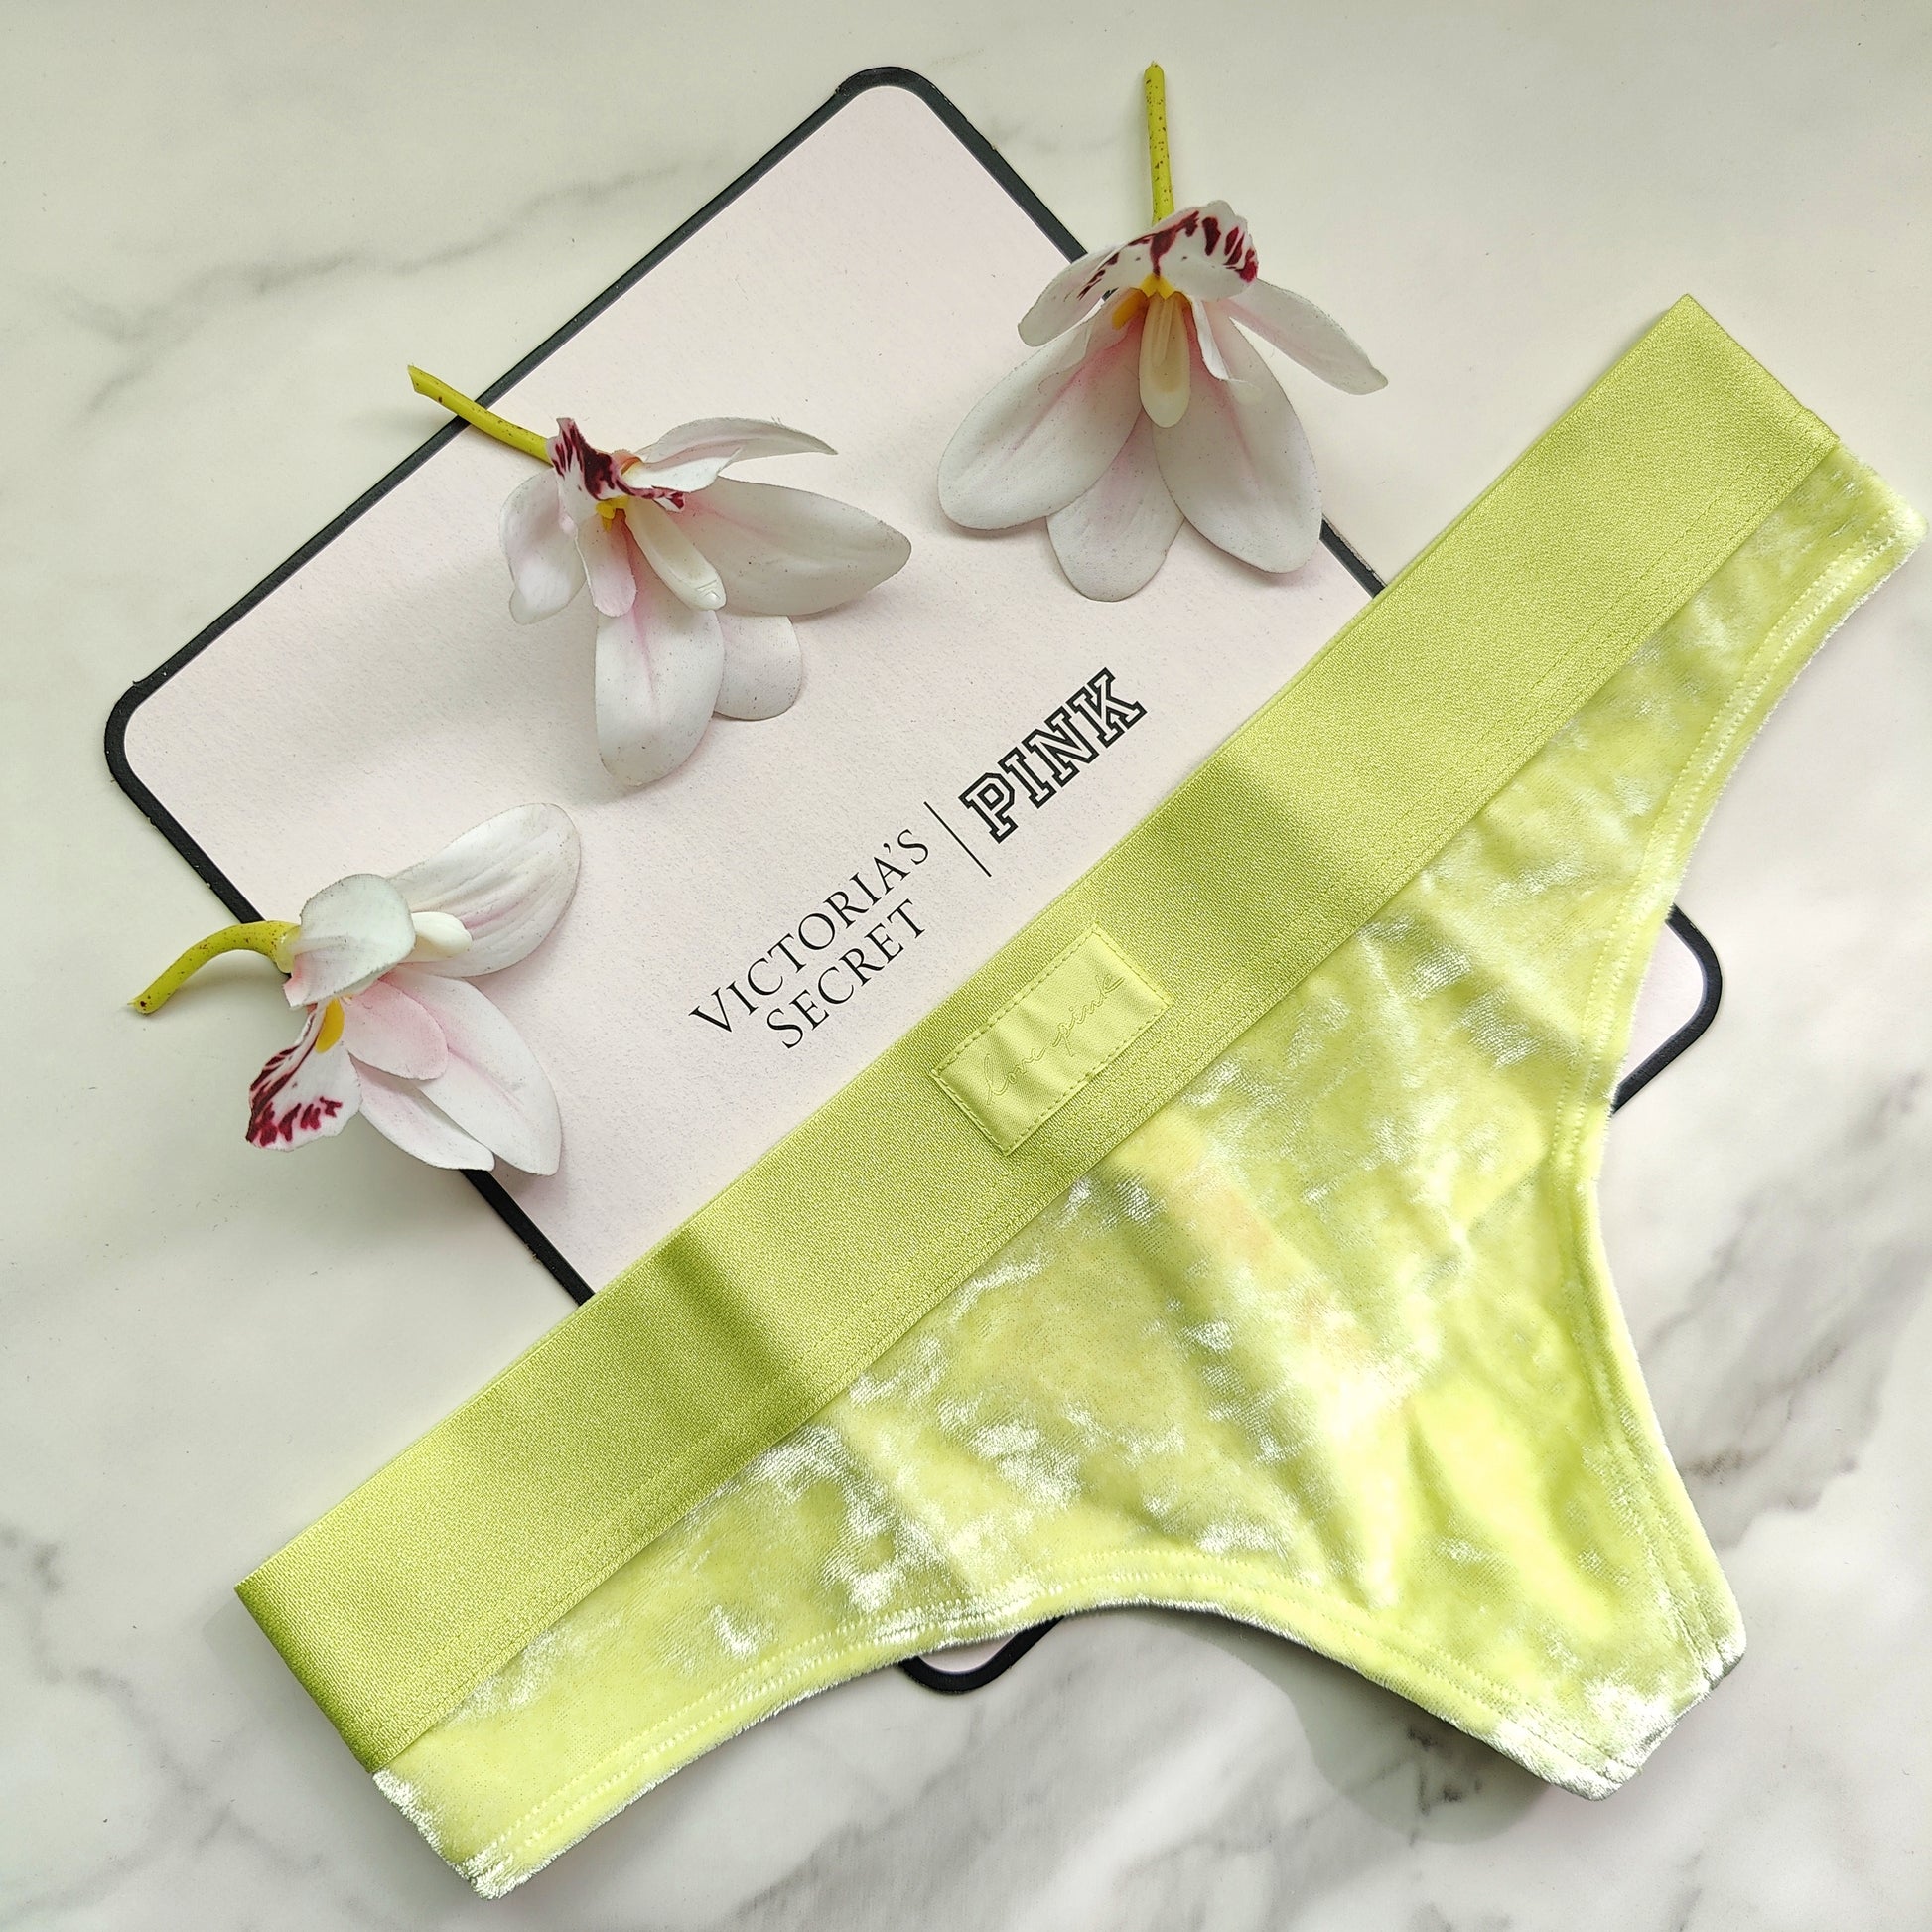 Velvet Thong Panty – Goob's Closet & Boutique